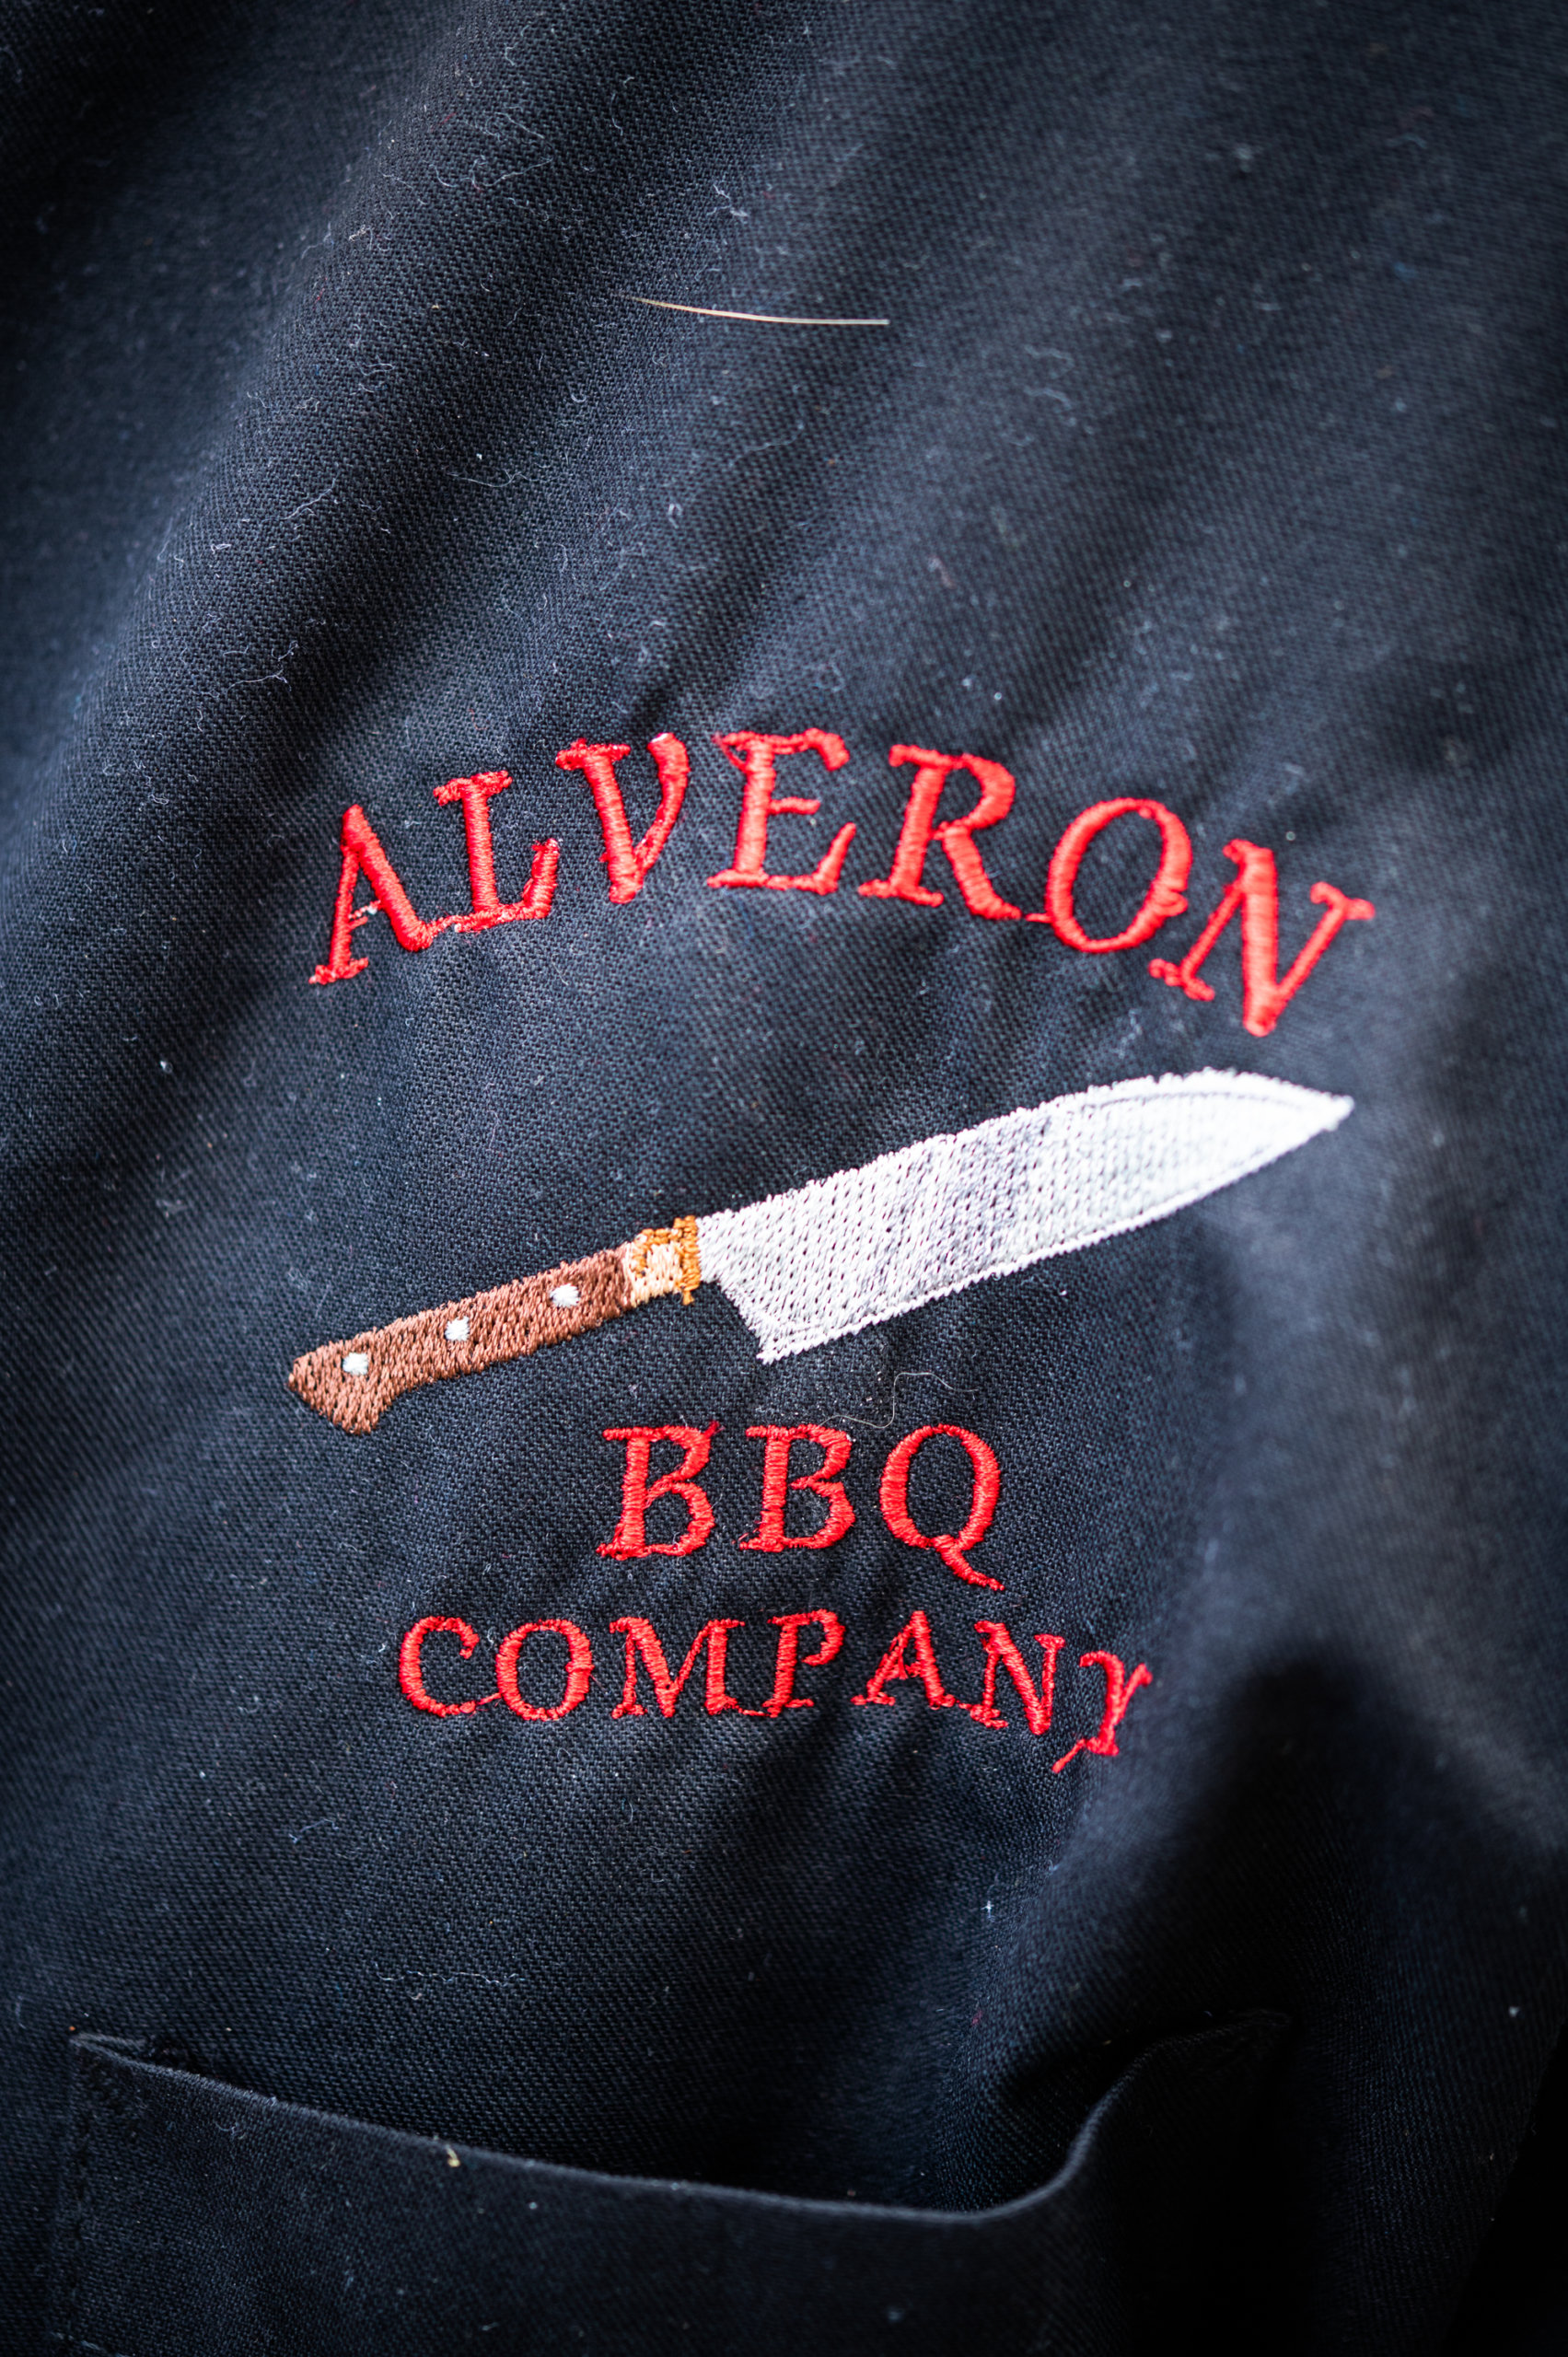 Detail of the Alveron logo on John's chef jacket